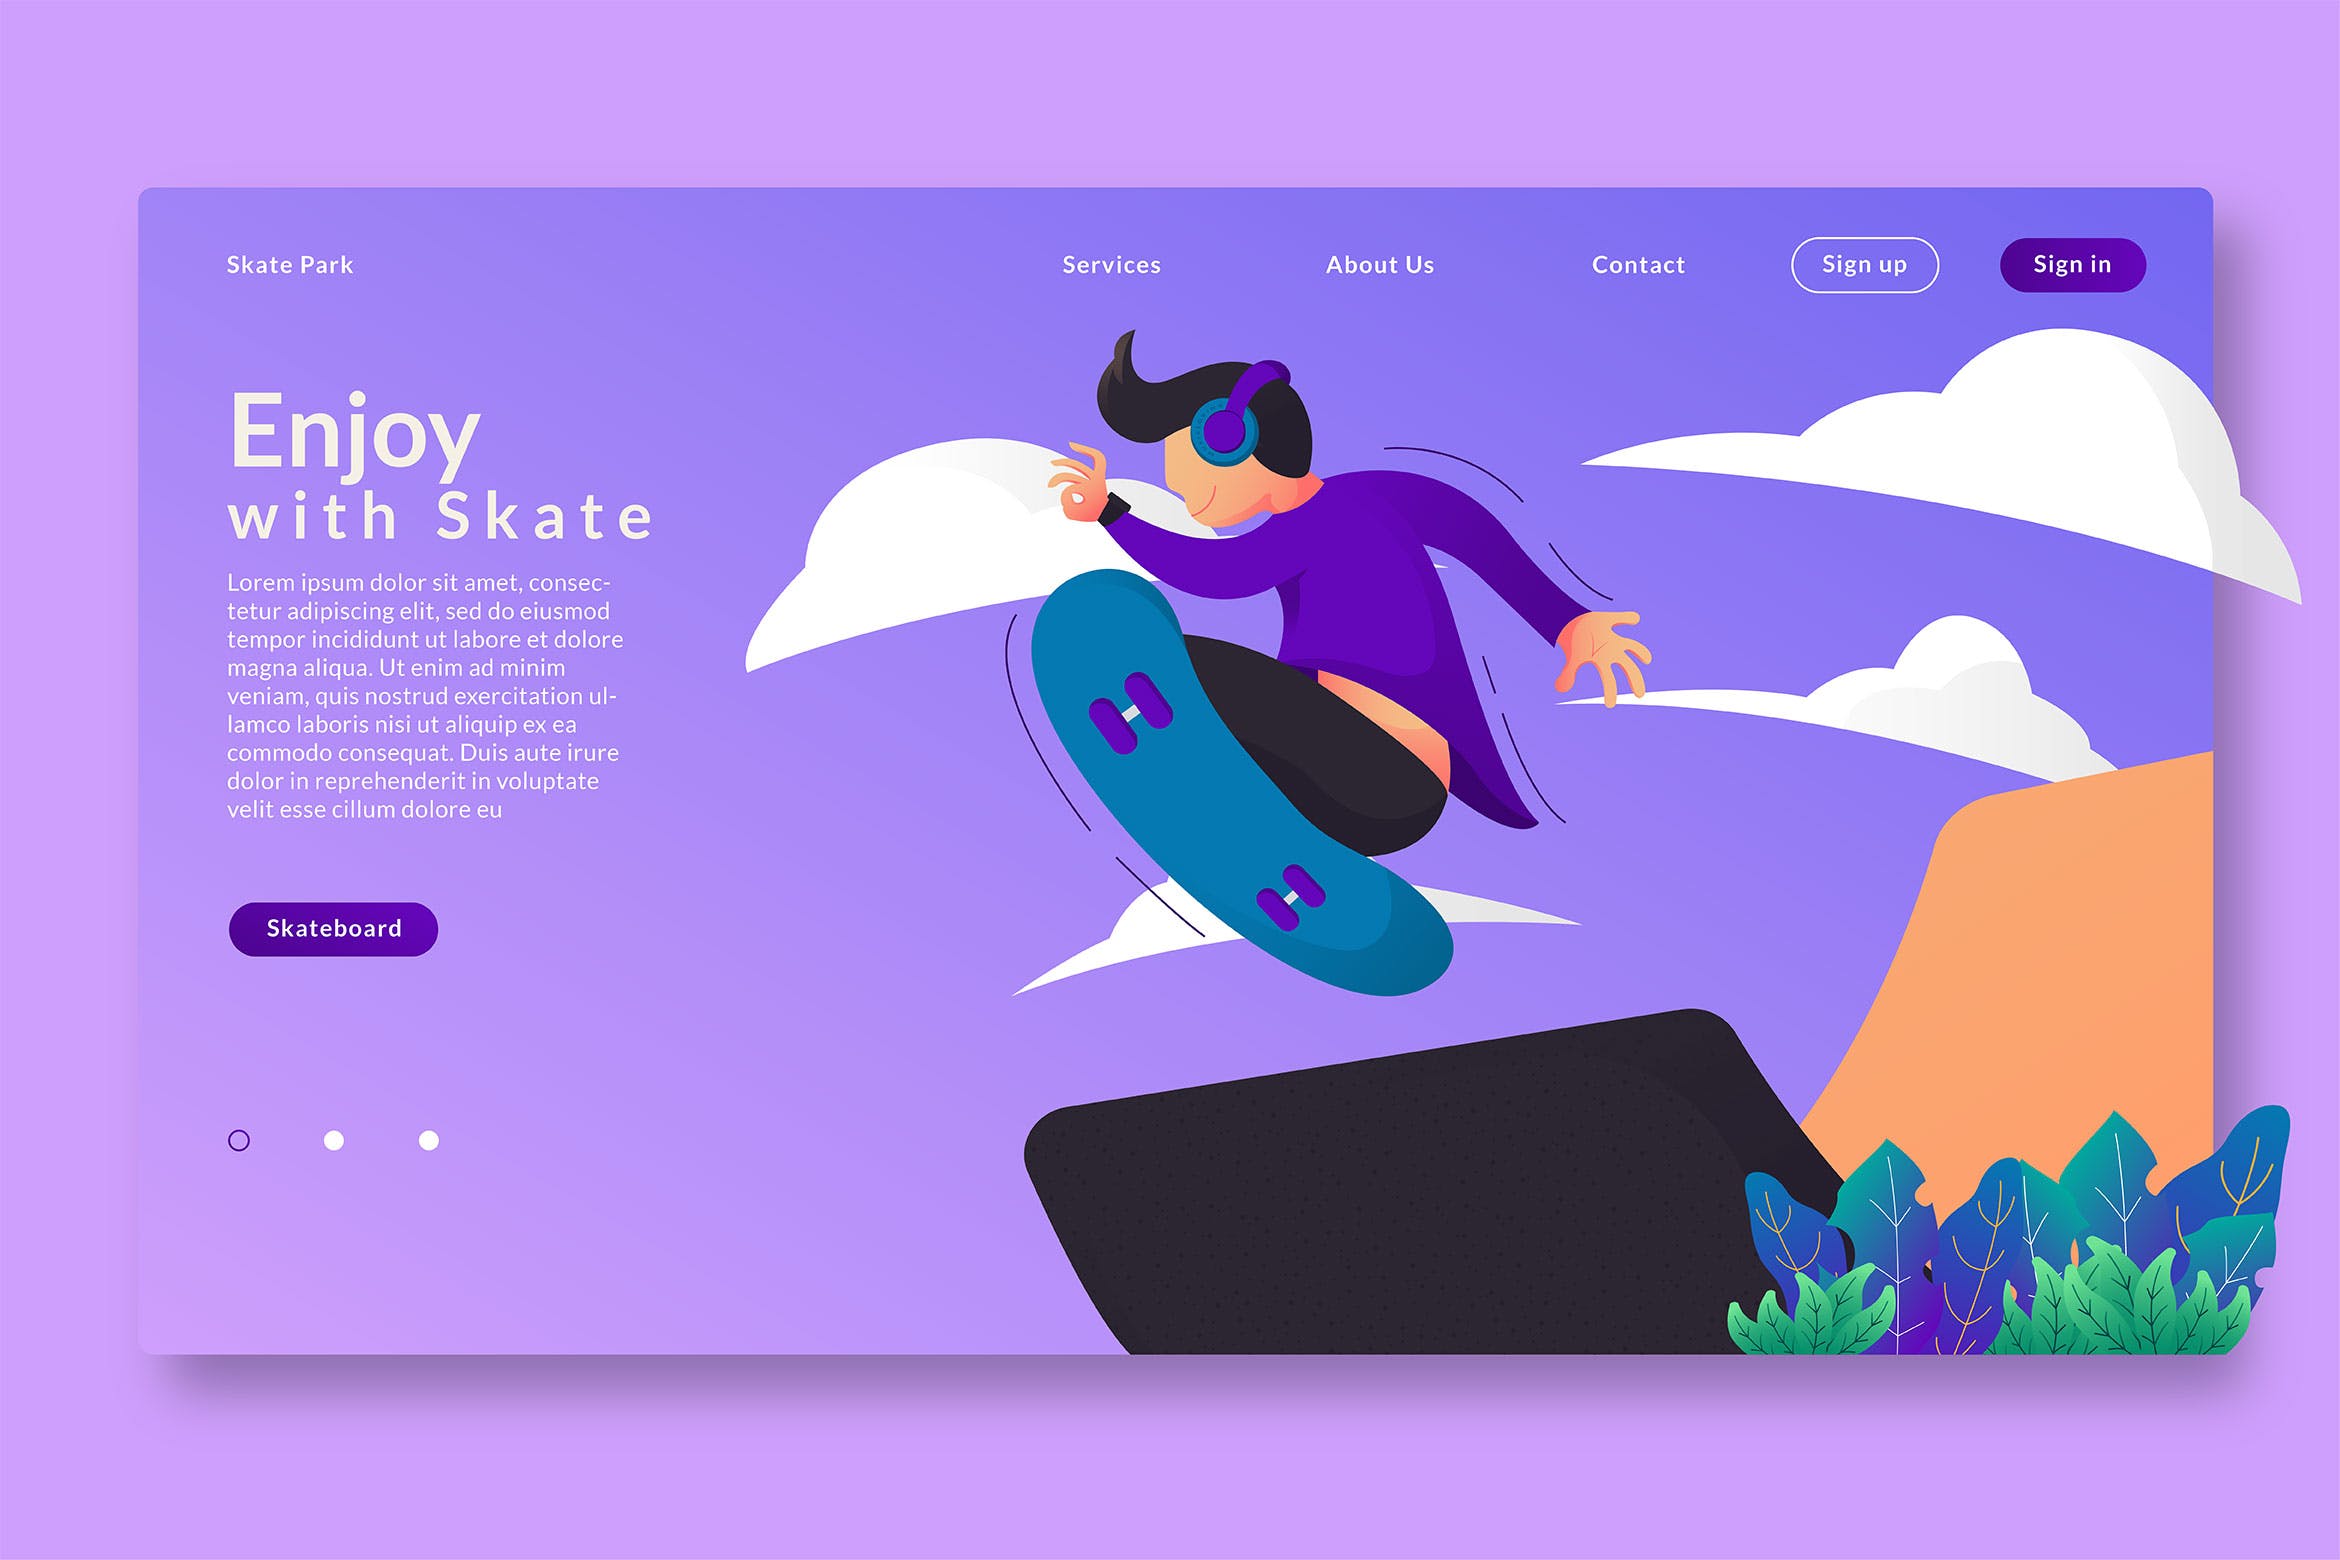 滑板运动文化主题网站设计矢量插画素材 Enjoy With Skate – Web Header  & Vector GR插图